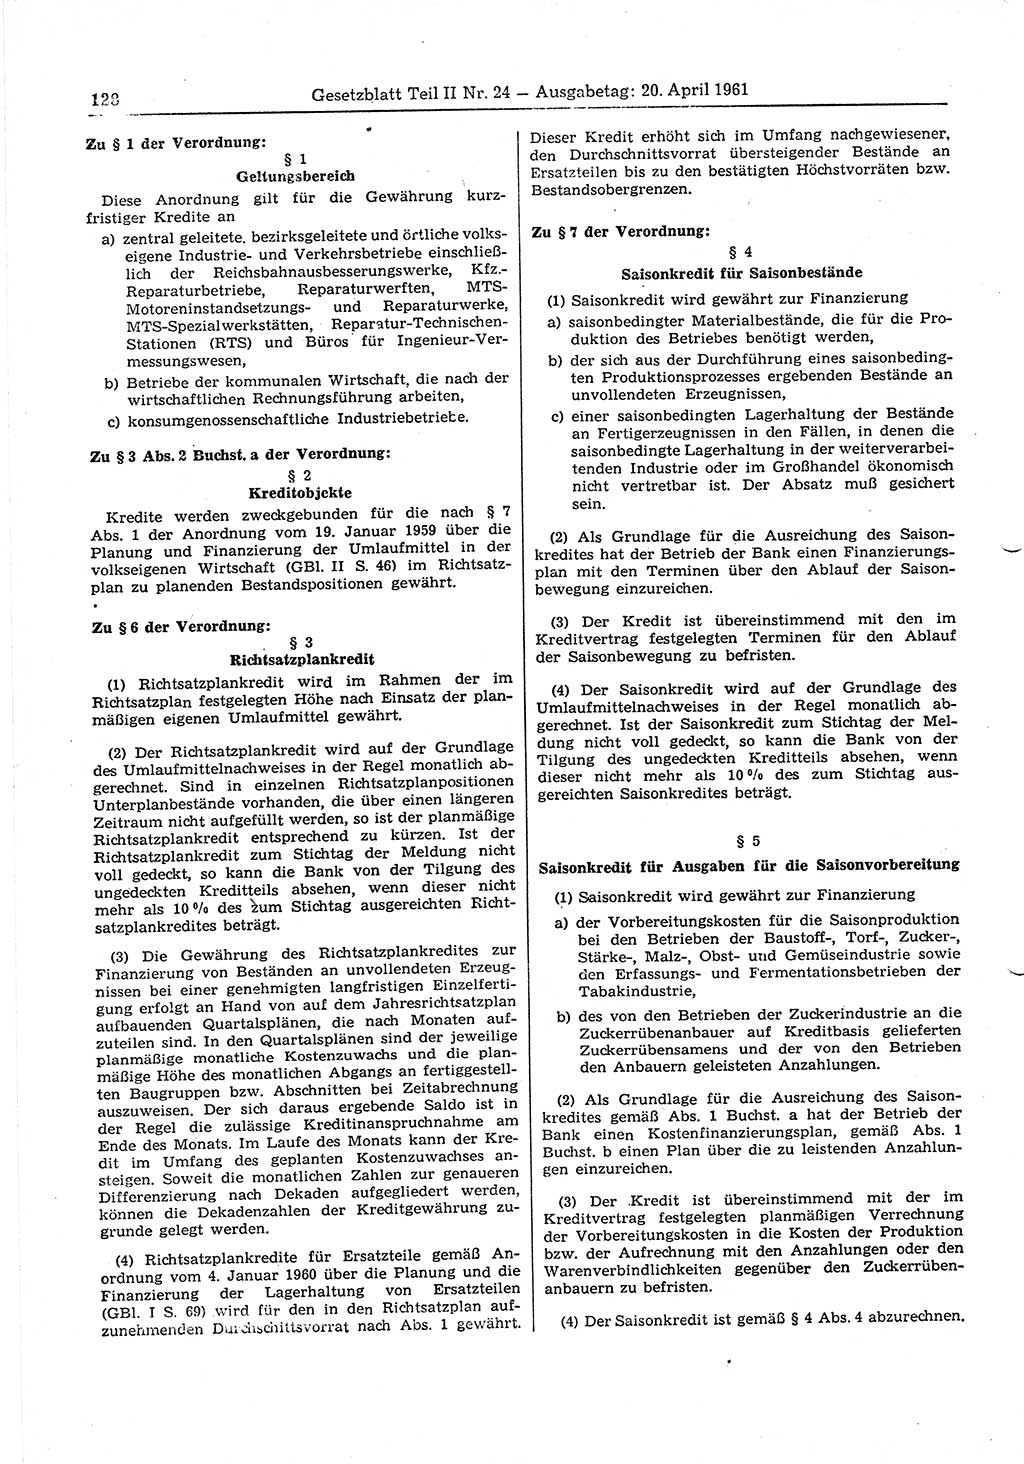 Gesetzblatt (GBl.) der Deutschen Demokratischen Republik (DDR) Teil ⅠⅠ 1961, Seite 128 (GBl. DDR ⅠⅠ 1961, S. 128)